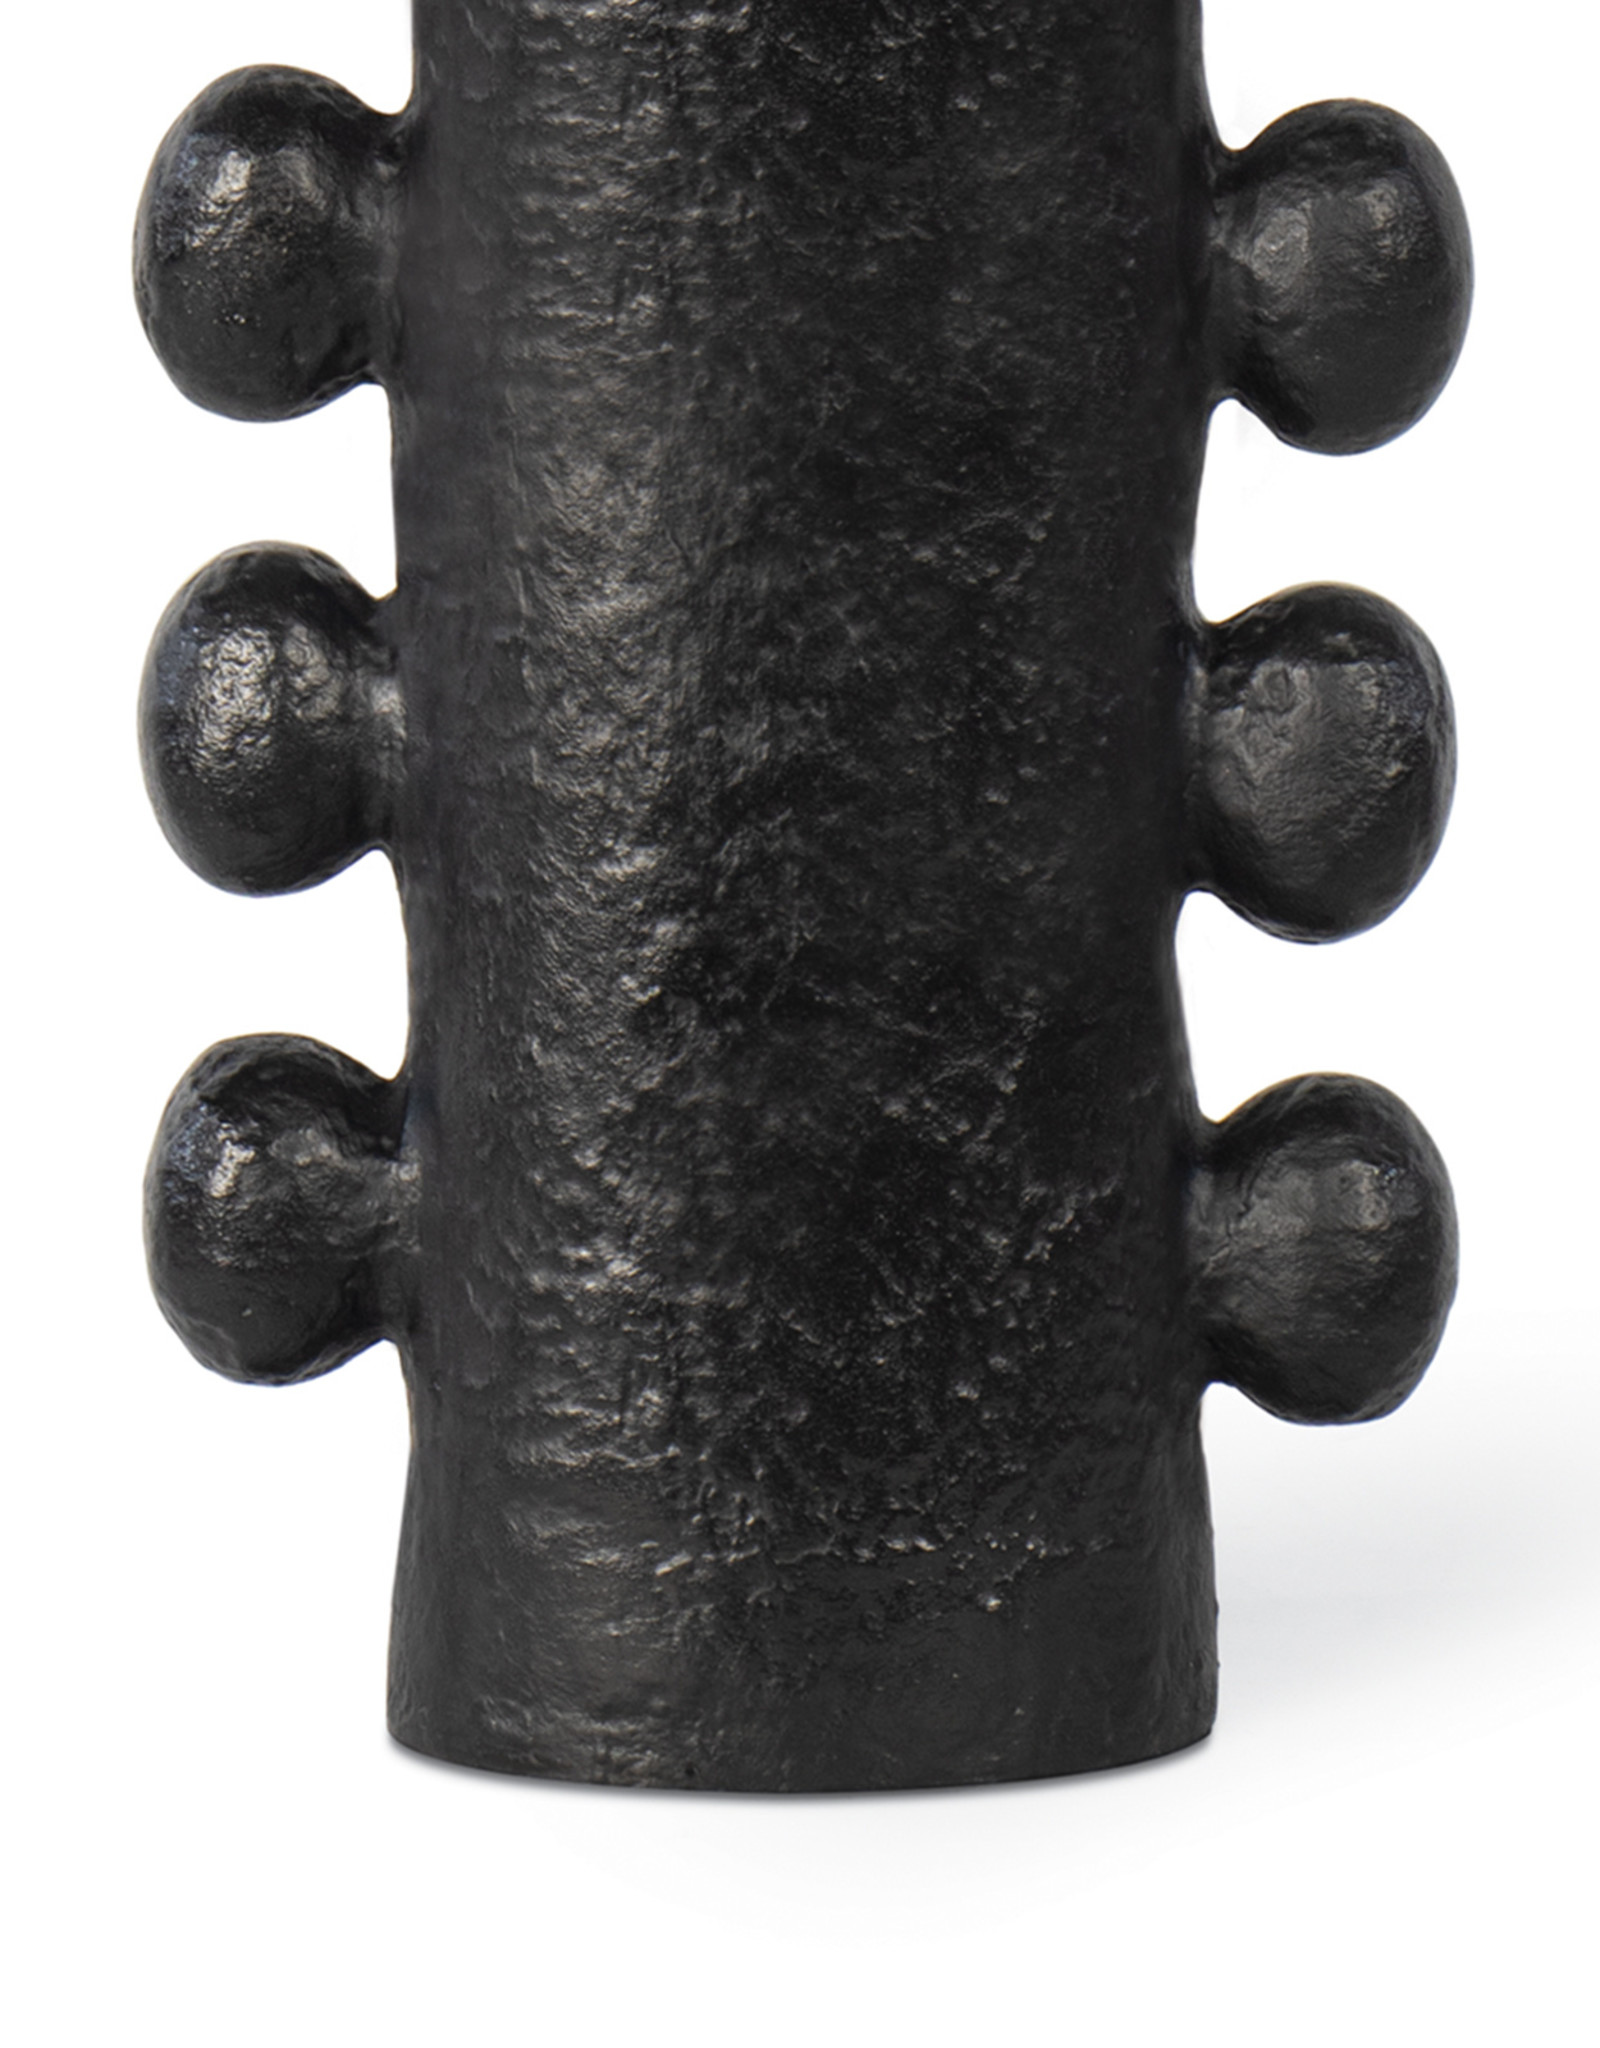 Regina Andrew Design Sanya Metal Table Lamp (Black)